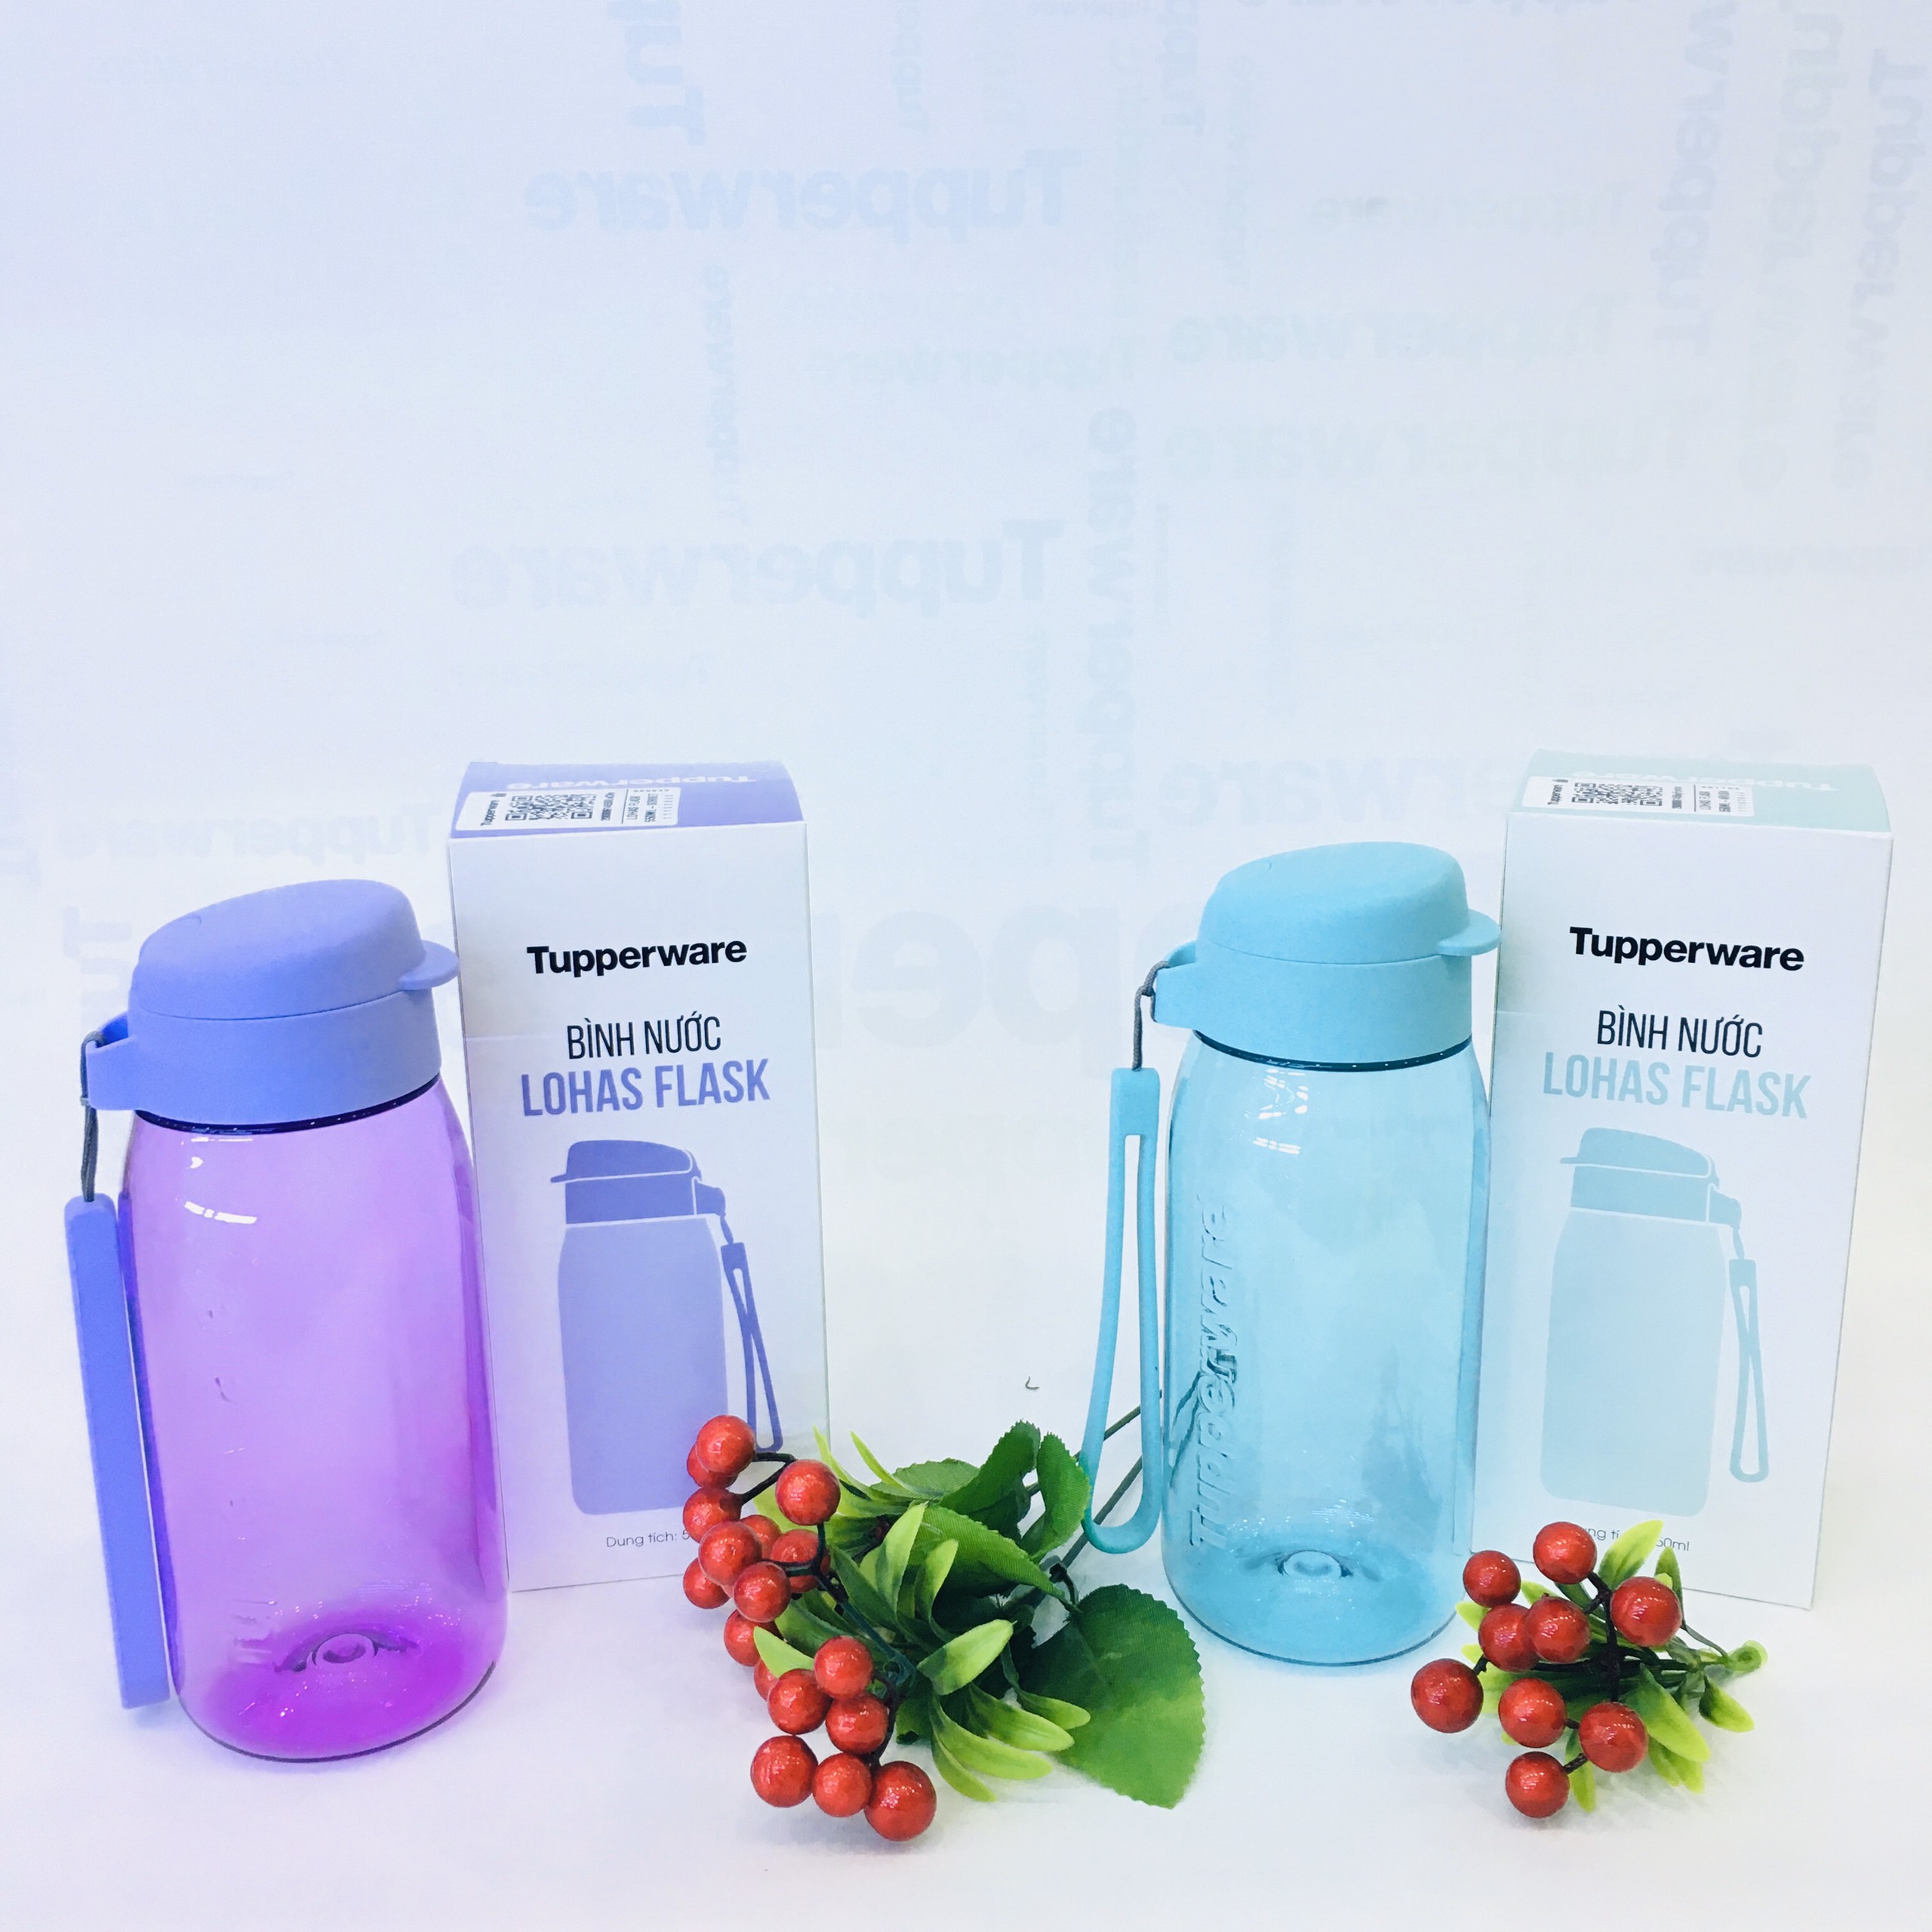 Bình nước Lohas Flask 550ml (sản phẩm mới, giao màu ngẫu nhiên)